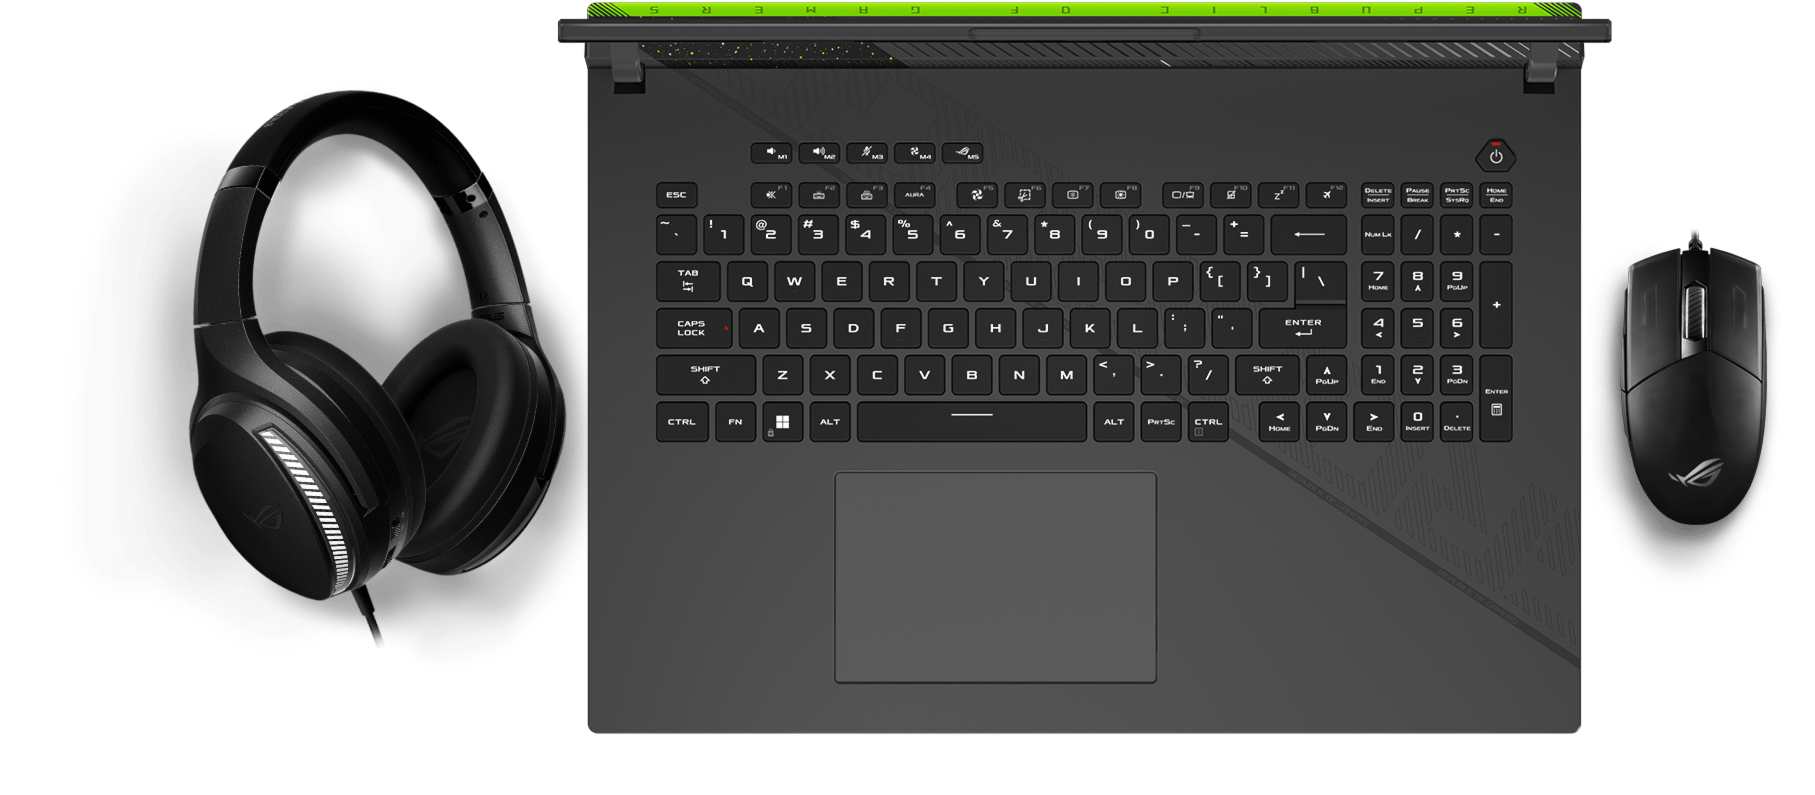 鍵盤的視圖，顯示 Aura 燈光效果與滑鼠和耳機同步的畫面。